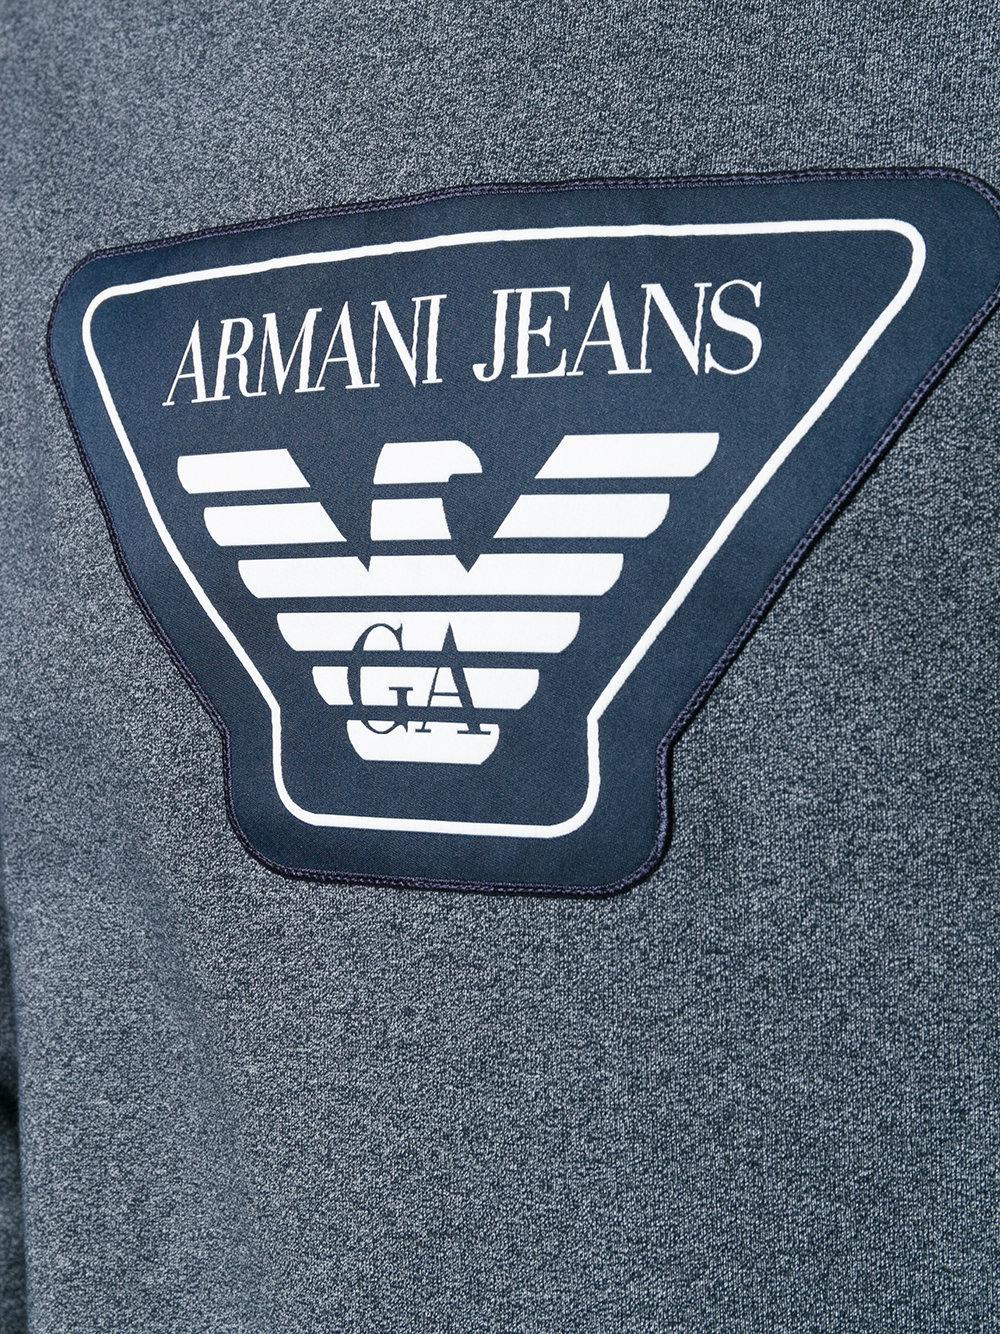 Lyst - Armani Jeans Logo Patch Sweatshirt in Blue for Men